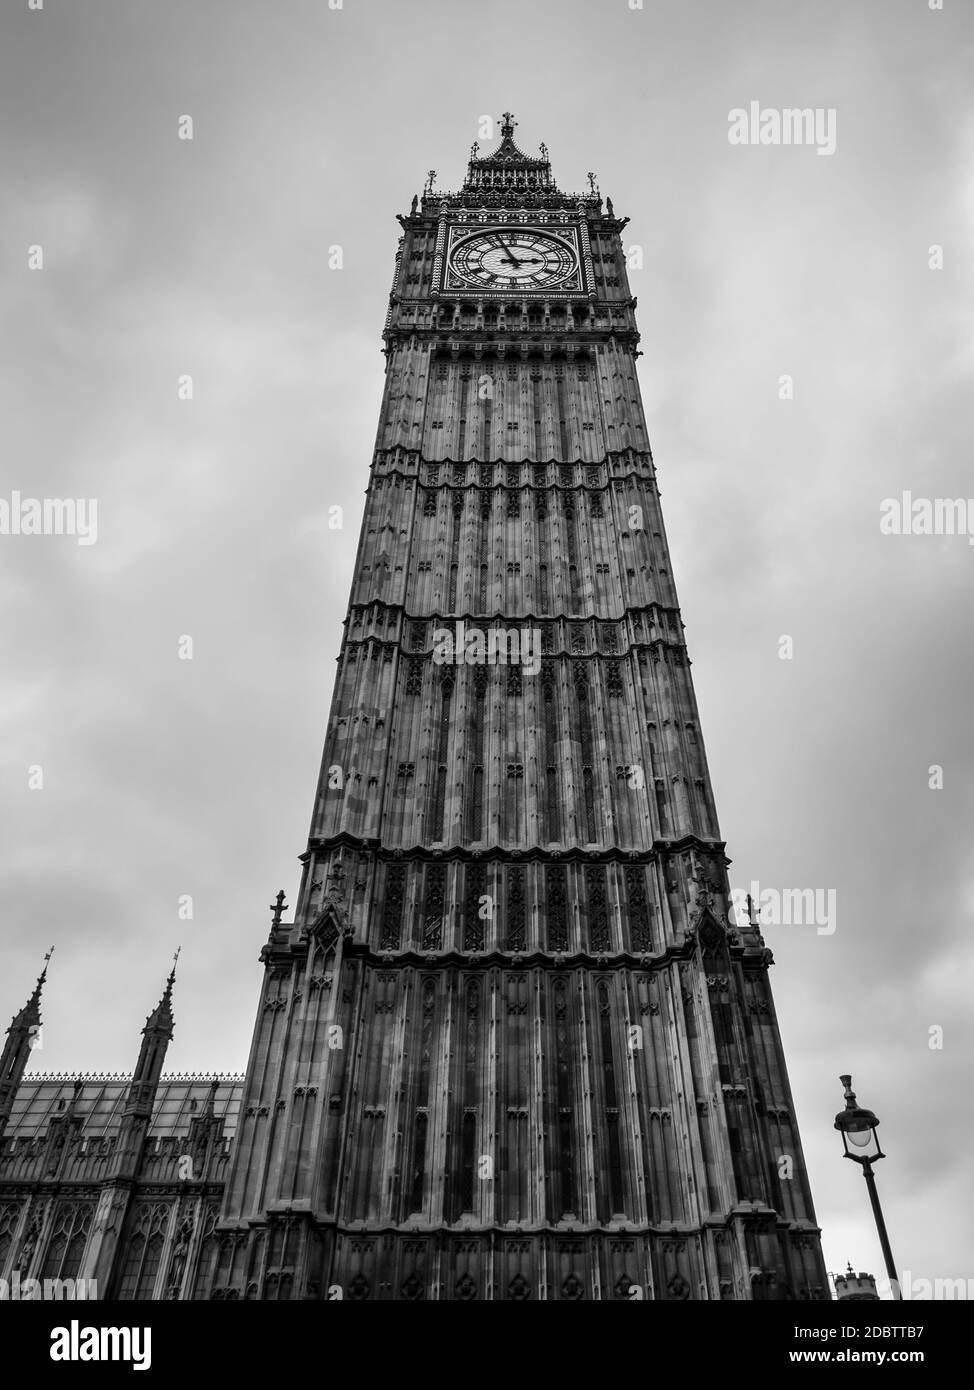 Big Ben Clock Tower gegen bewölkter Himmel, auch als Elizabeth Tower in der Nähe von Westminster Palace und Houses of Parliament in London England bekannt geworden Stockfoto